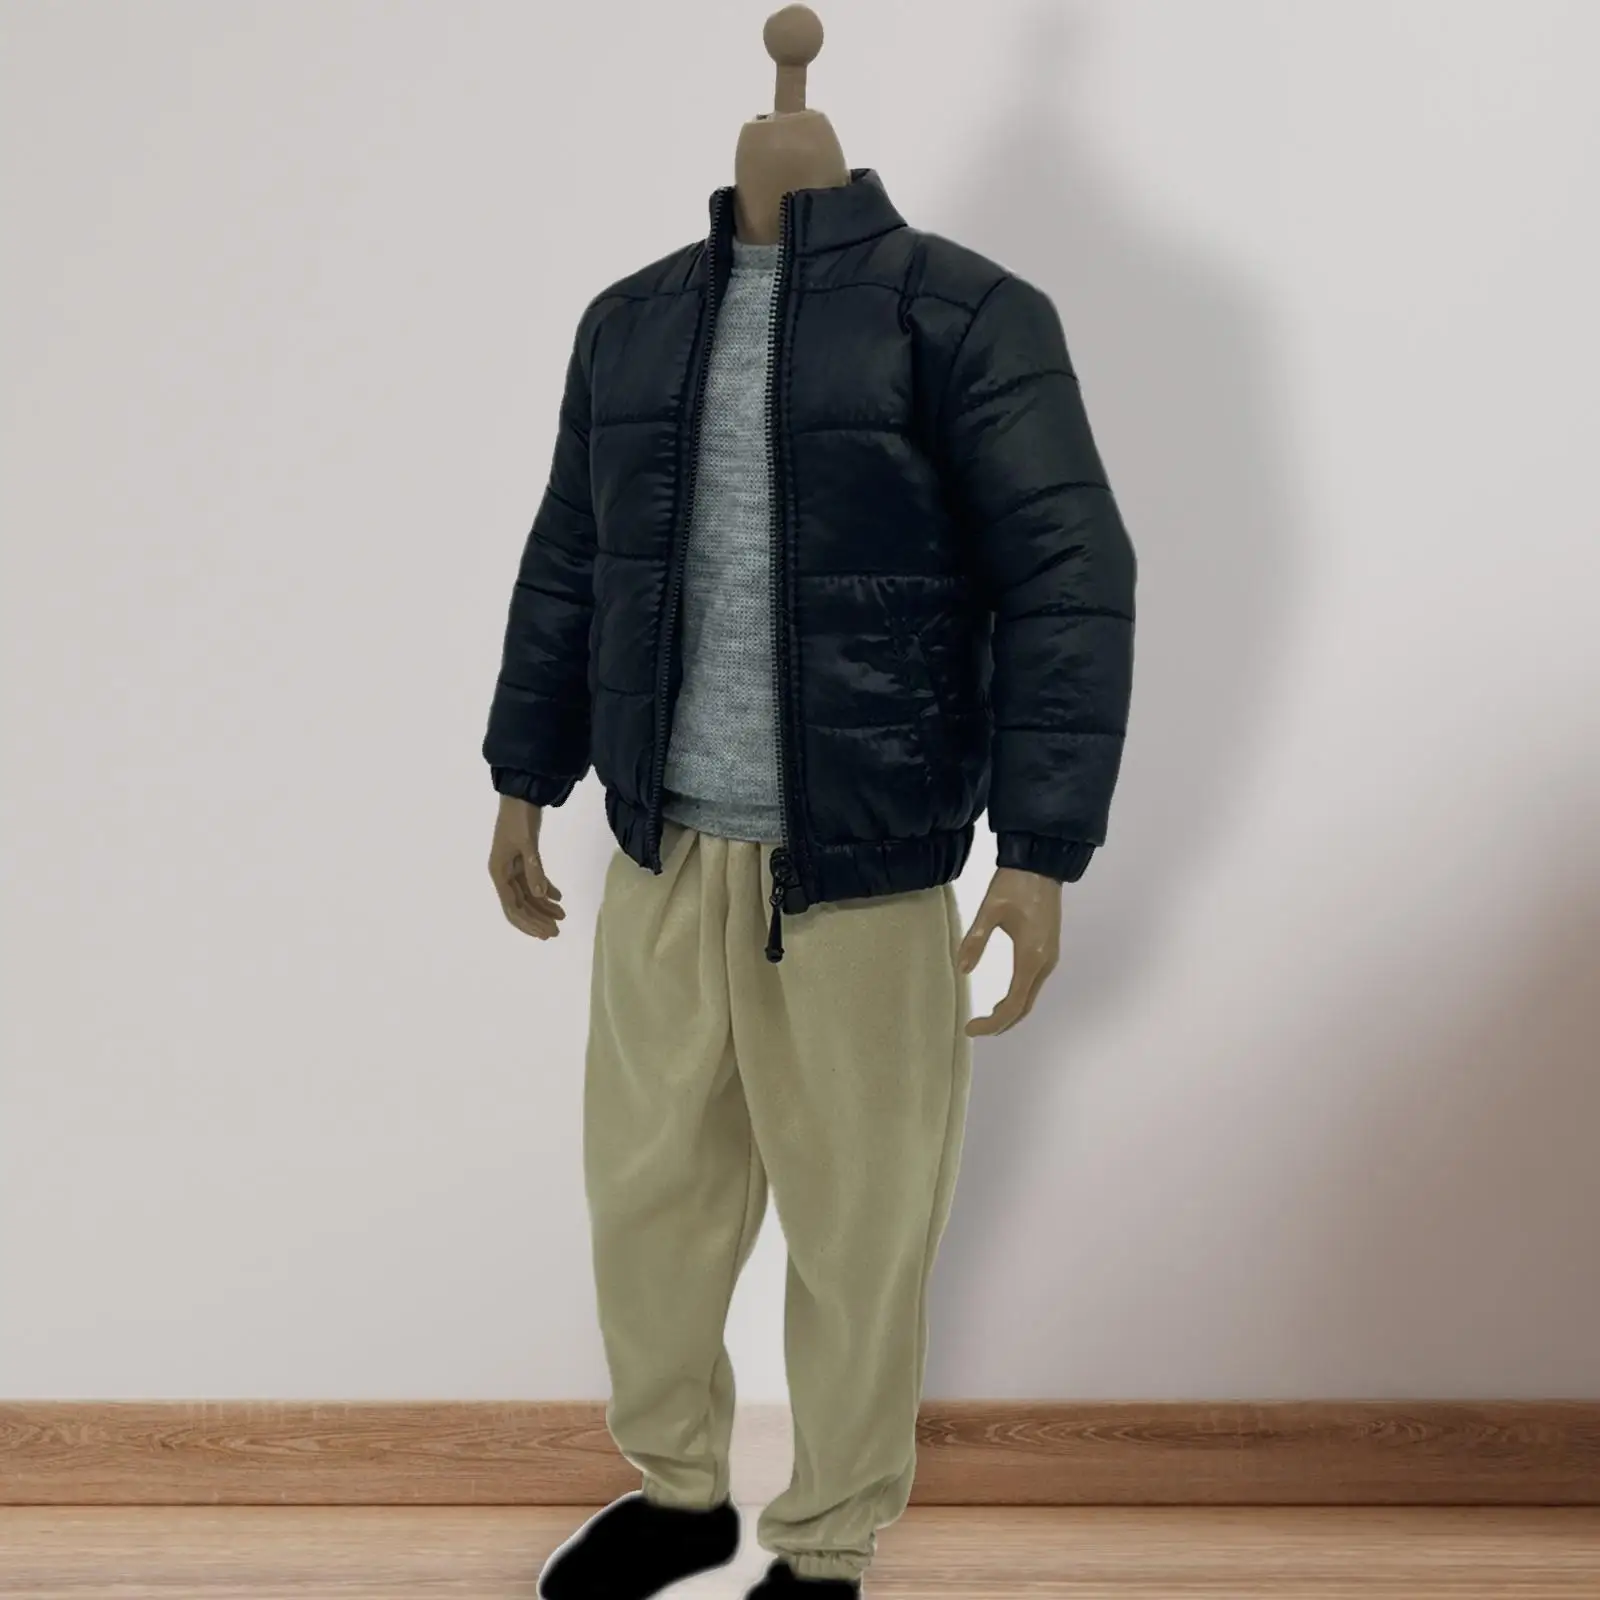 Male Figure Doll Clothes Vest Accessories Men`s Figure Accessory for Male Figure